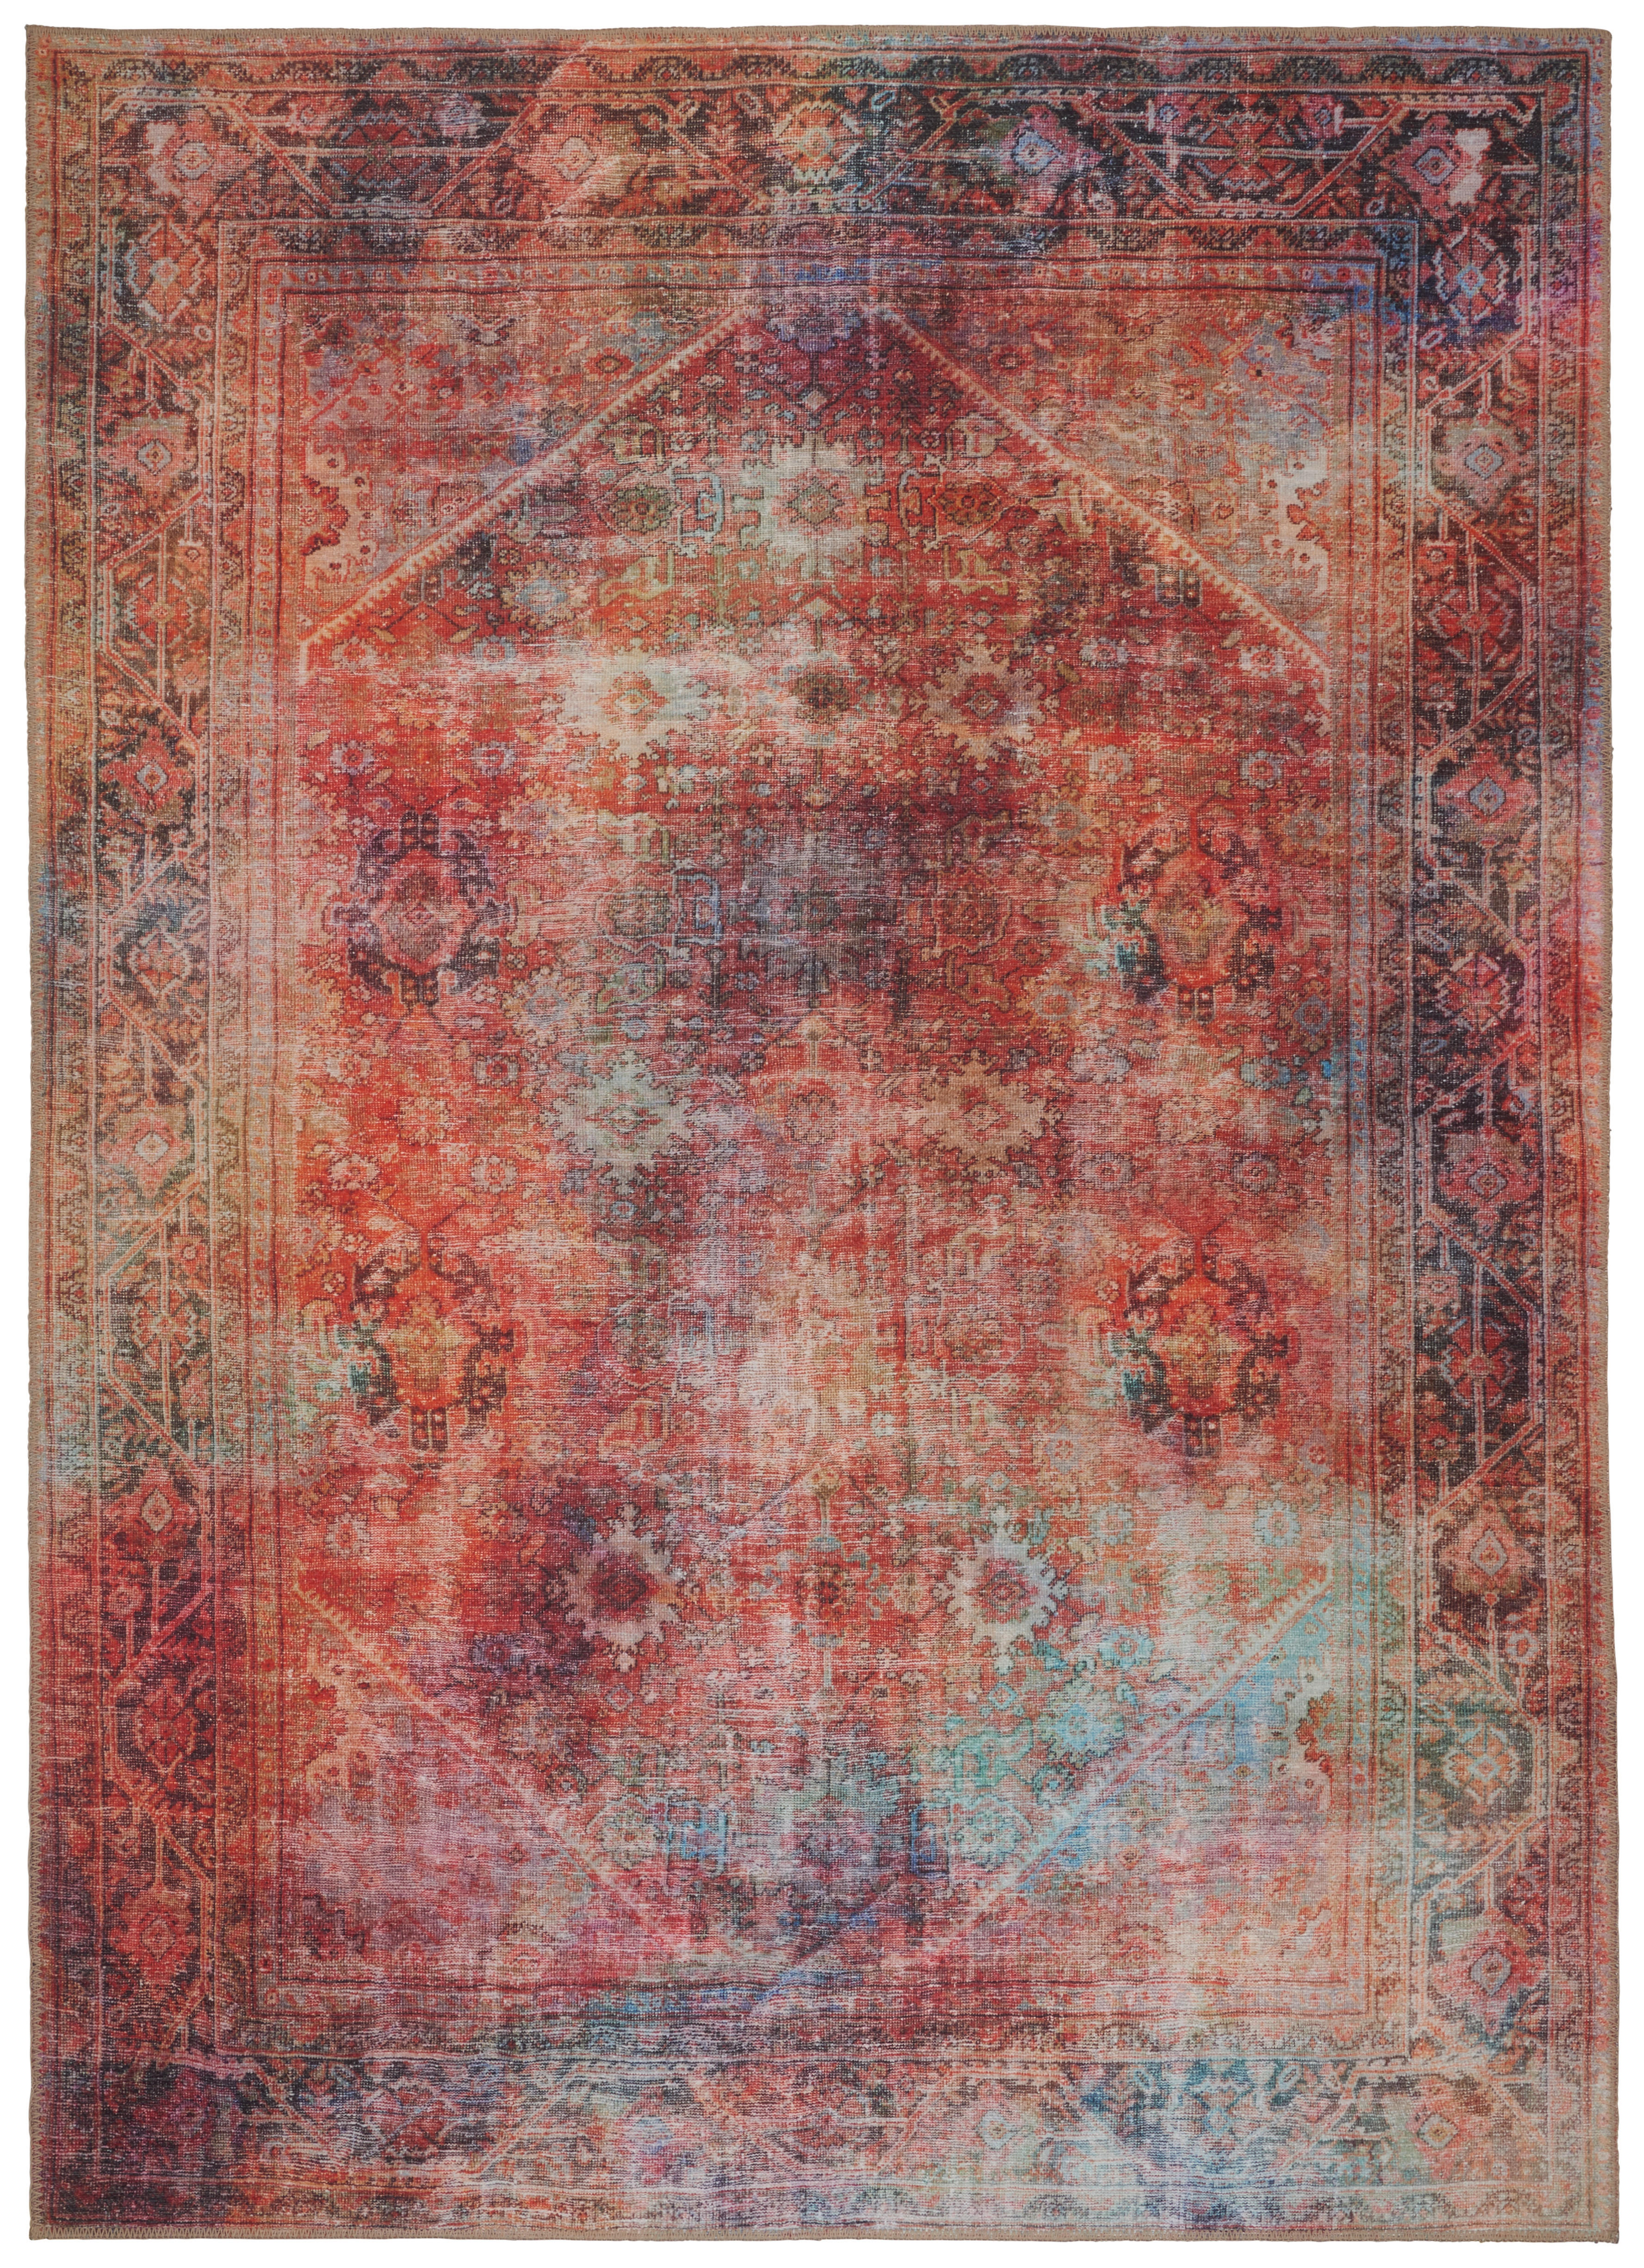 VINTAGE-TEPPICH  190/290 cm  Multicolor   - Multicolor, Trend, Textil (190/290cm) - Novel